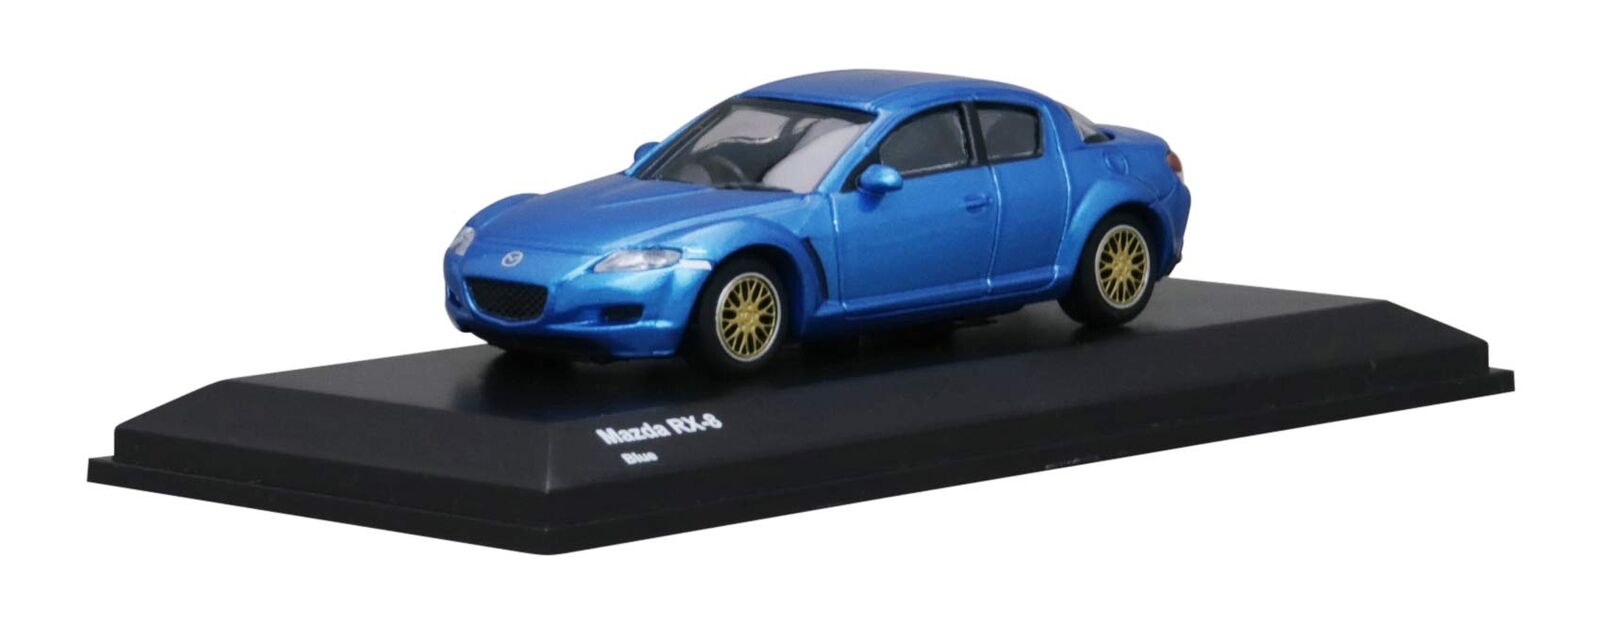 Kyosyo Original Mazda RX-8 KS07033R8BL 1/64 Scale Diecast Mini Car Toy Blue